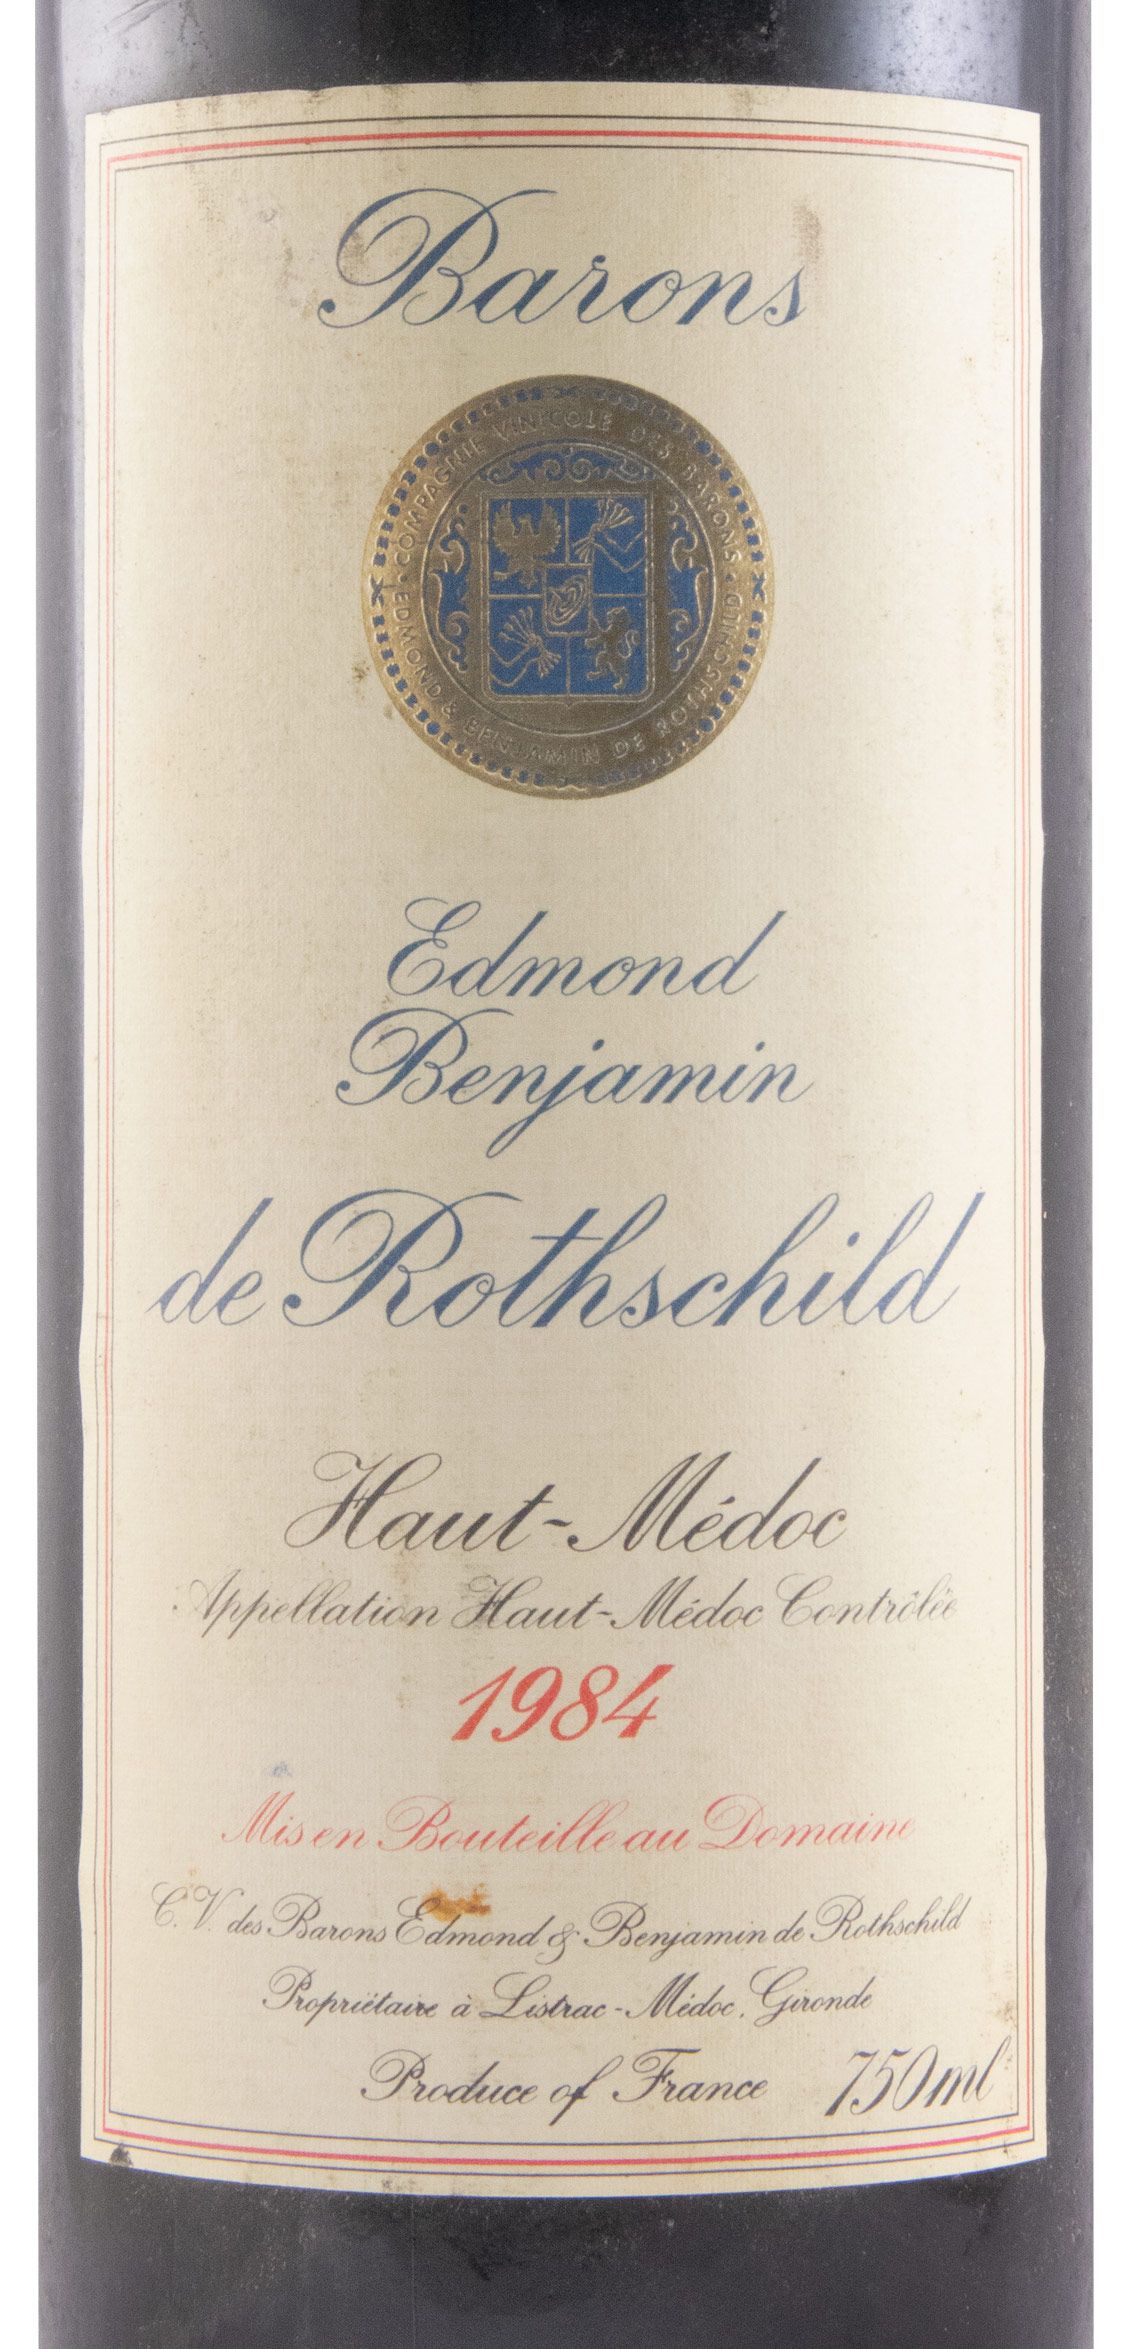 1984 Barons Edmond & Benjamin de Rothschild Haut-Médoc red